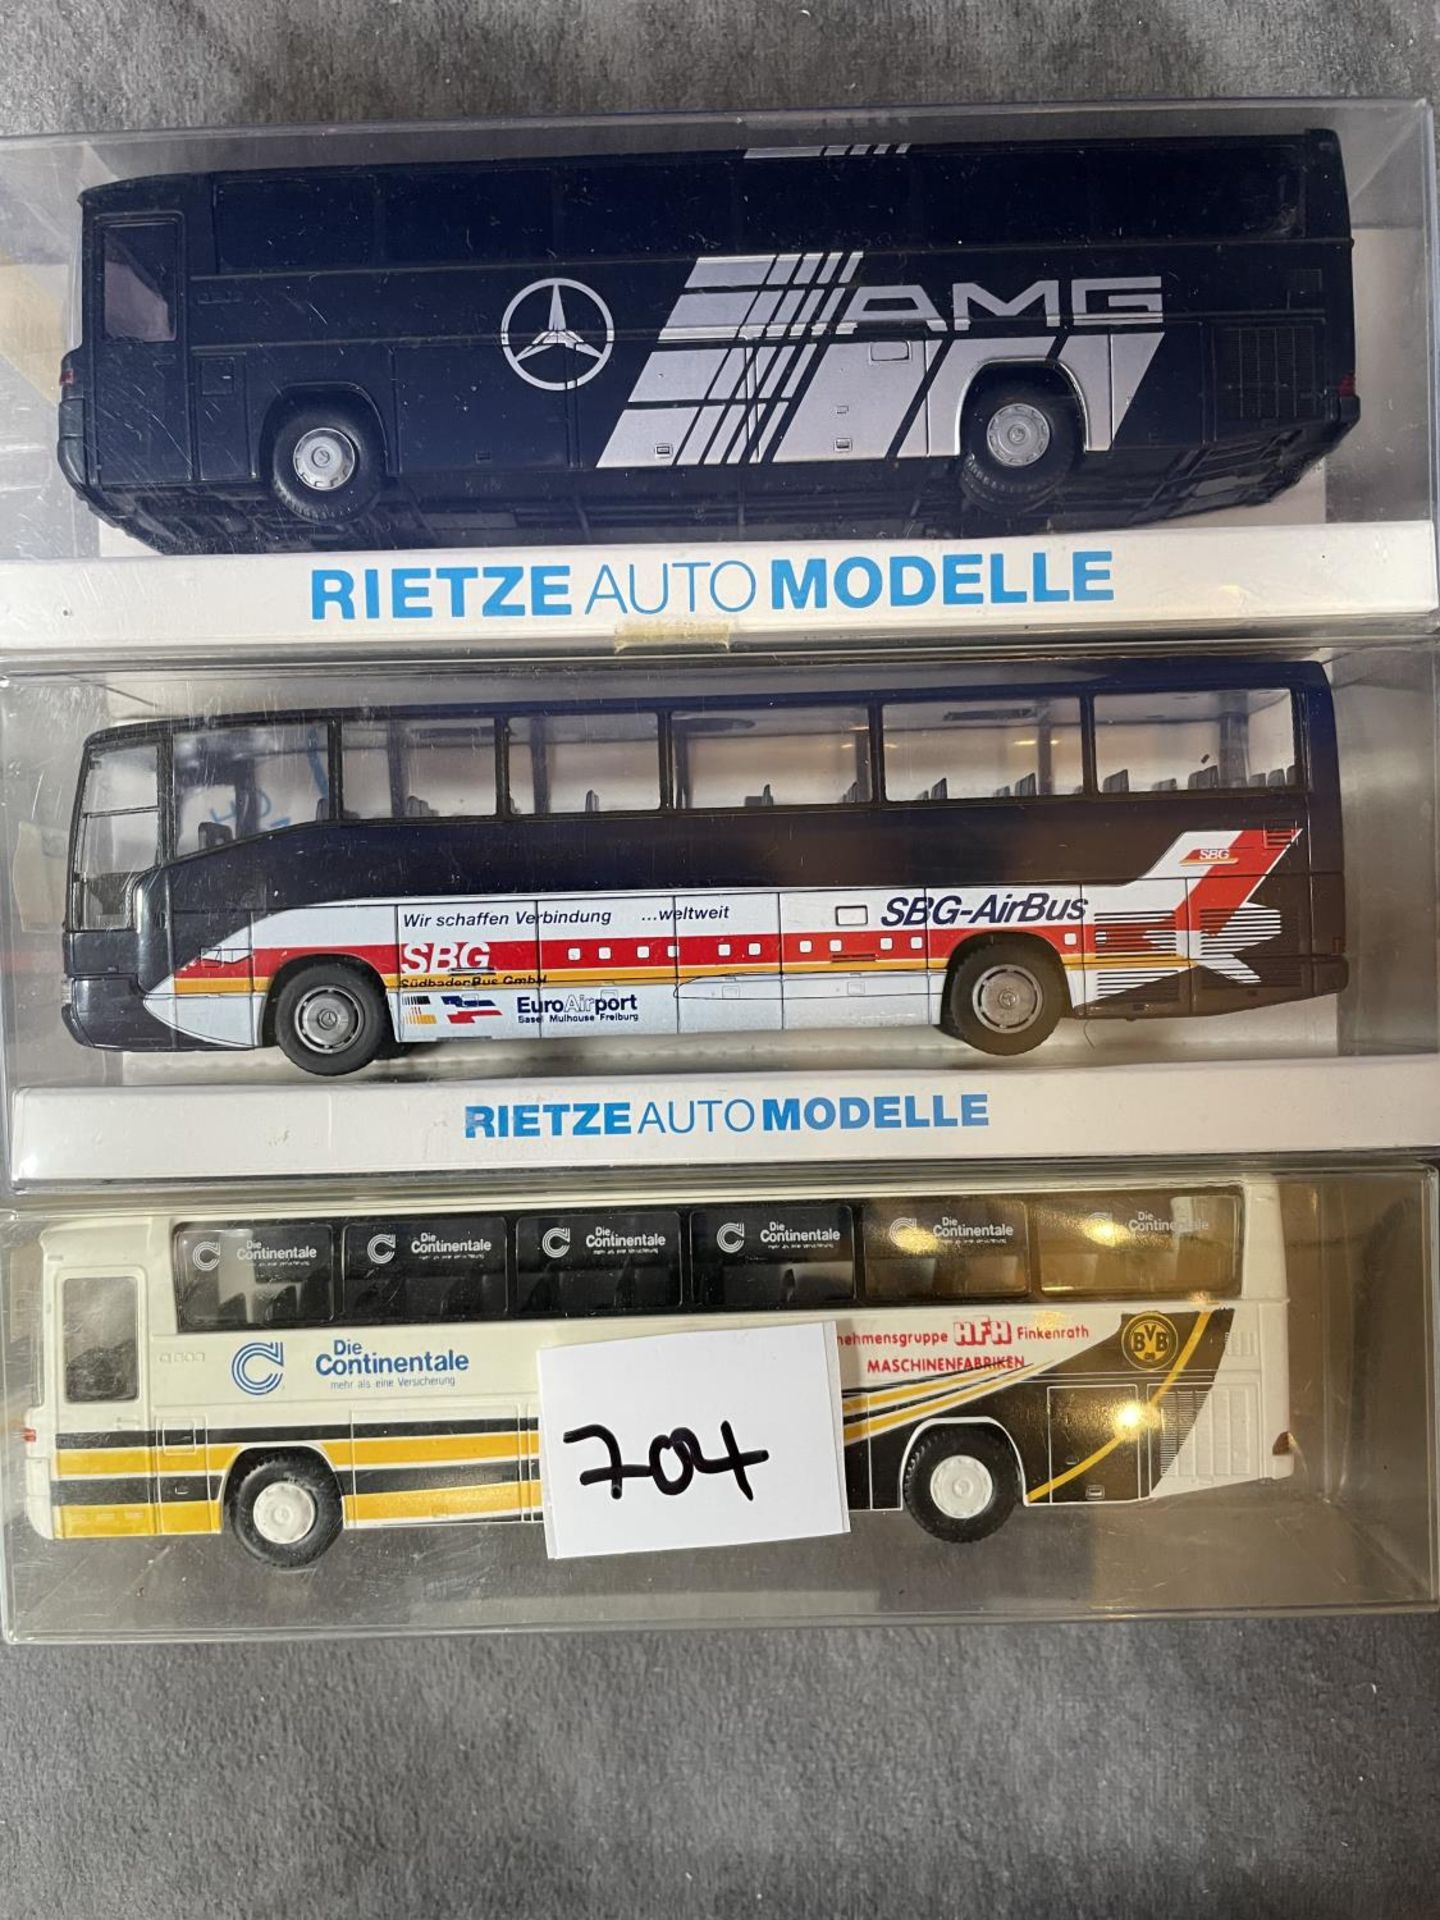 3 x Boxed Rietze Auto Modelle Coach/Bus 1/87 Scale Model Boxed